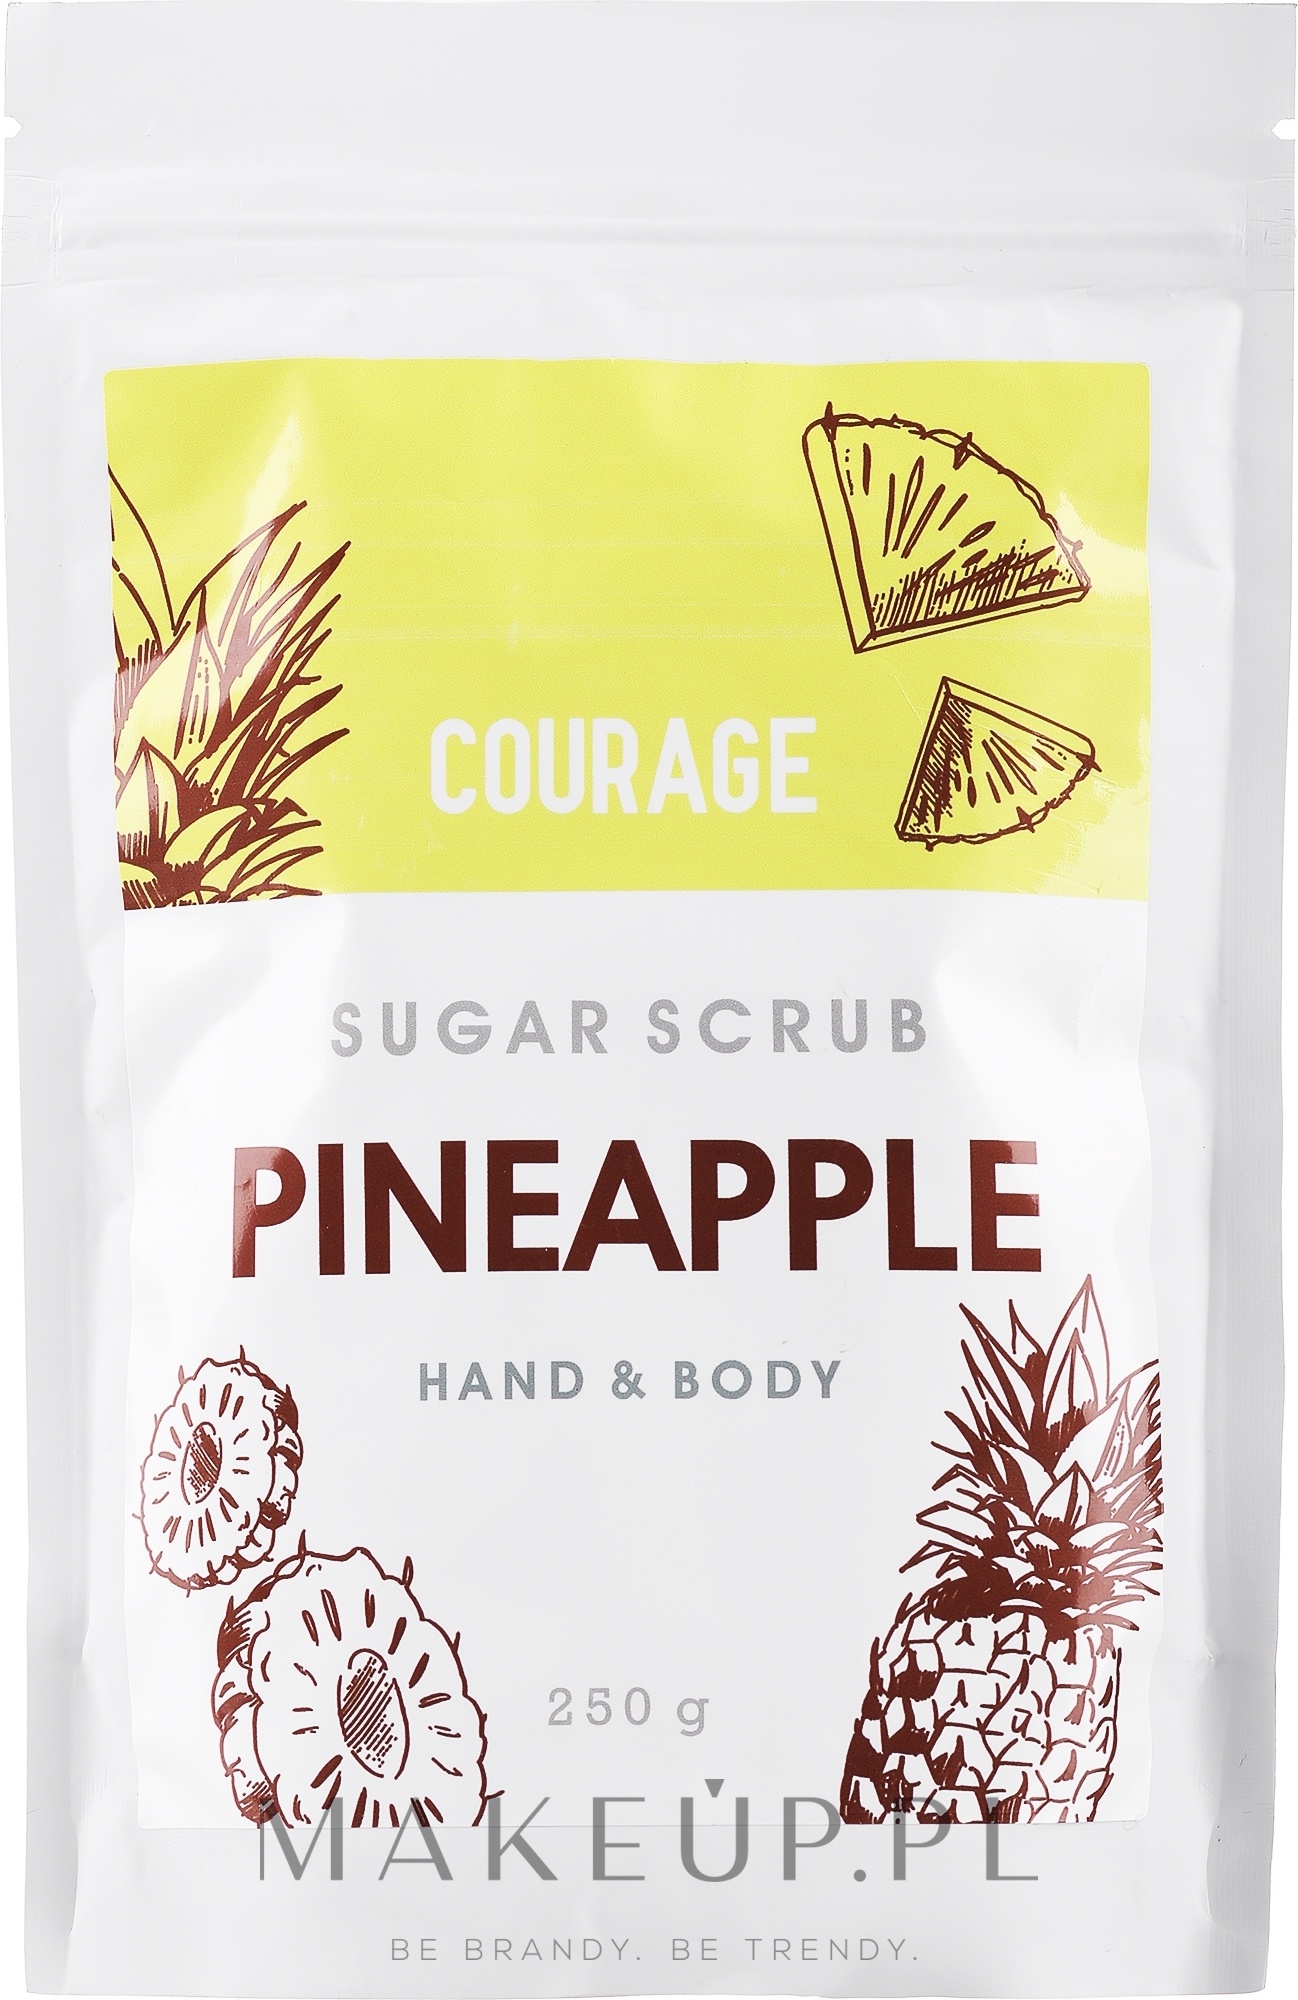 Cukrowy ananasowy peeling do rąk i ciała - Courage Pineapple Hands & Body Sugar Scrub (uzupełnienie) — Zdjęcie 250 g